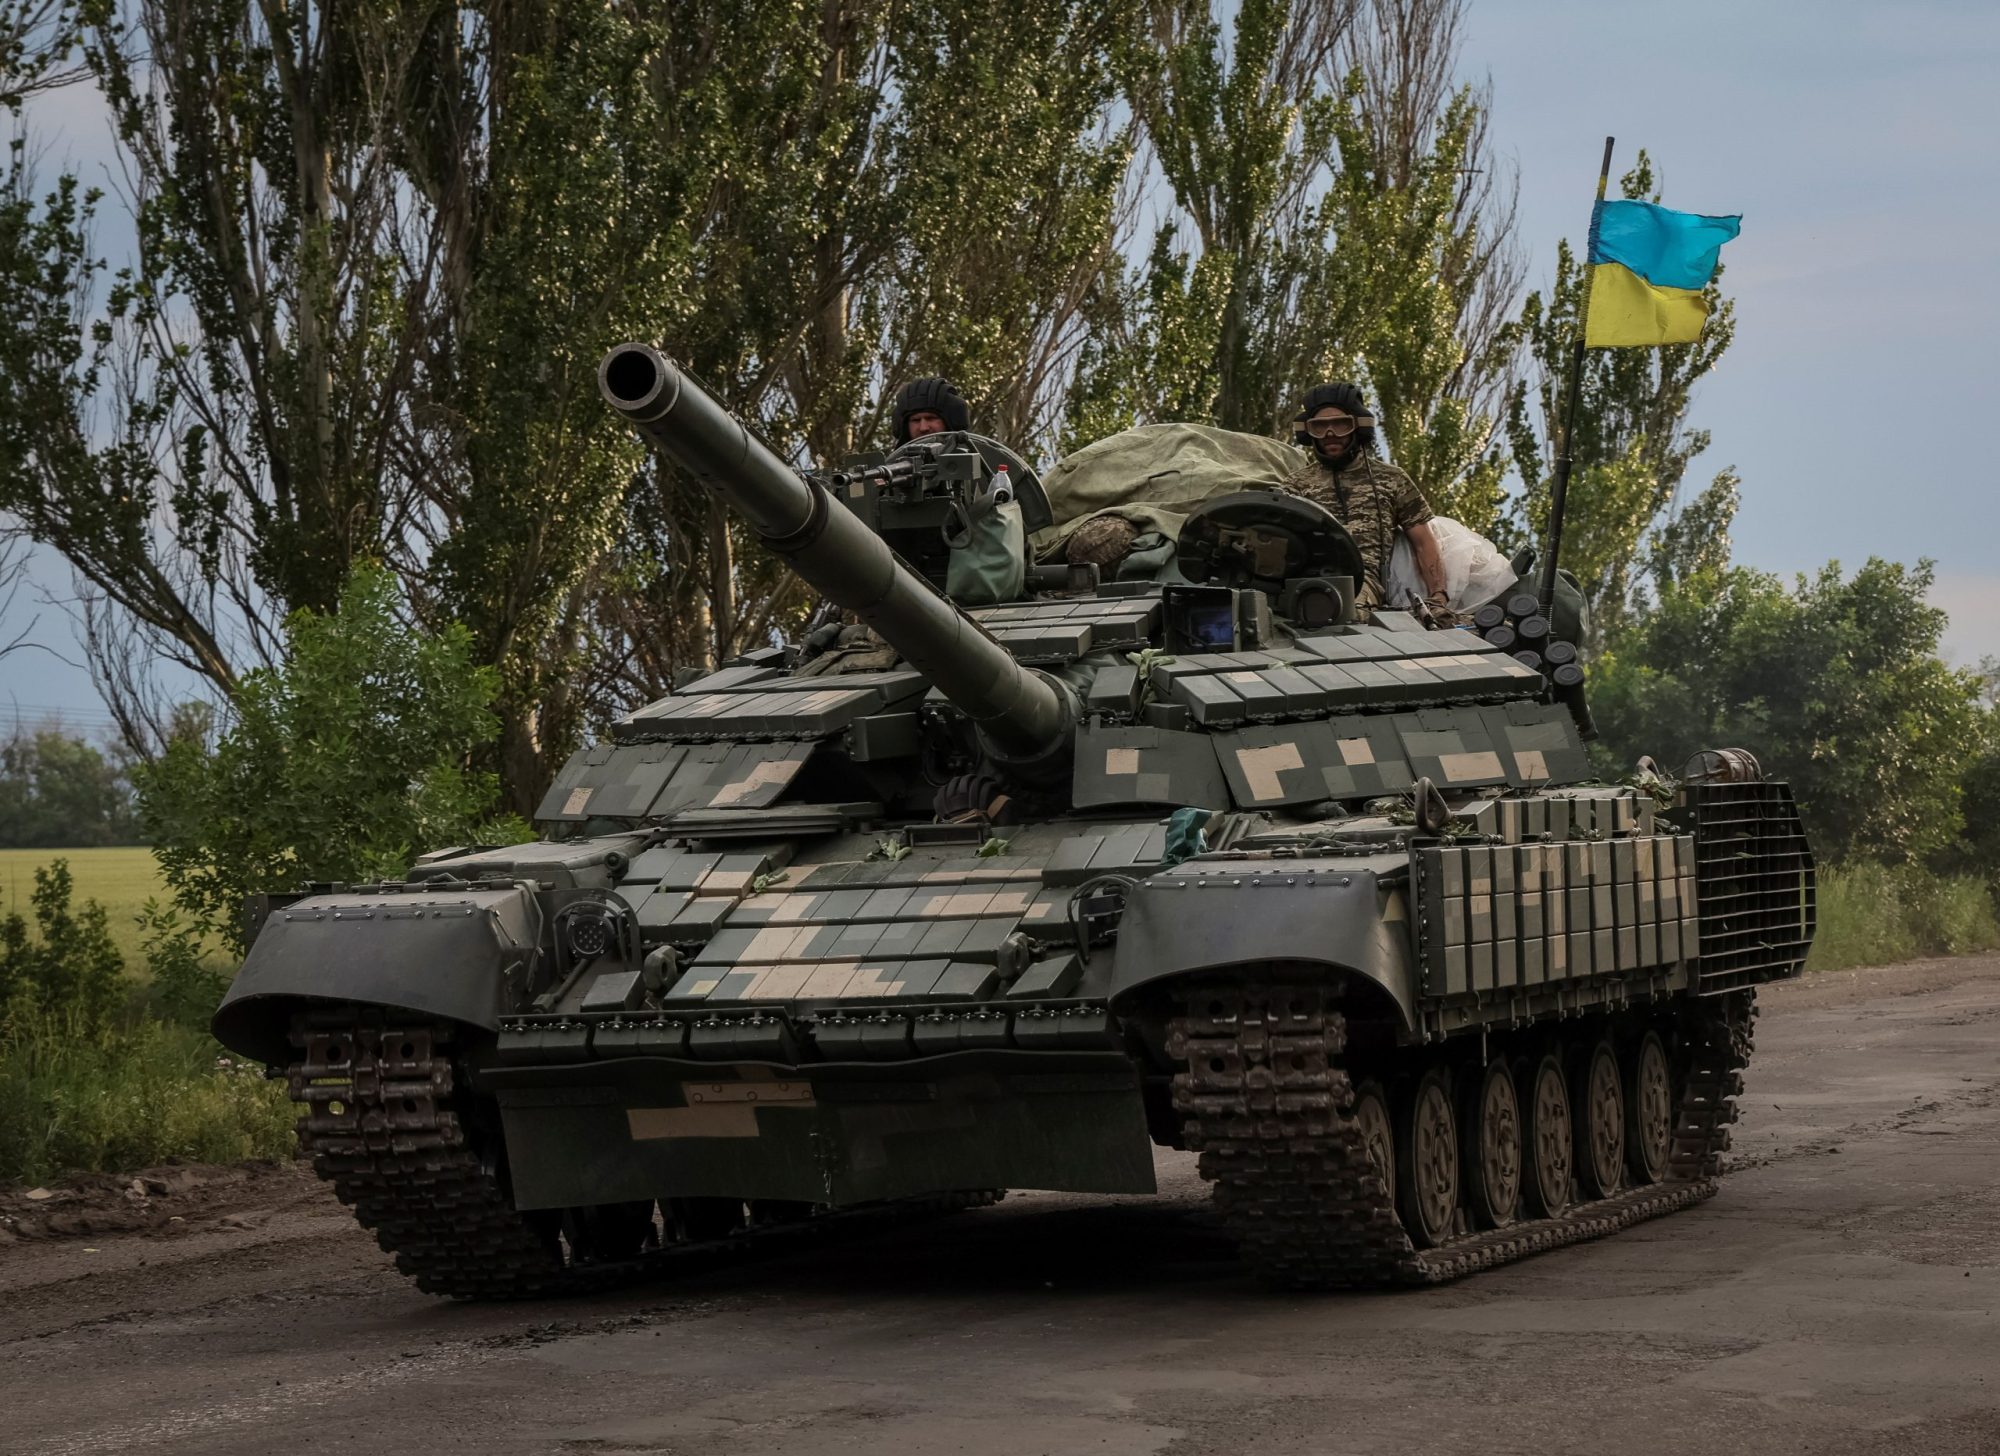 Οι ρωσικές δυνάμεις απέκρουσαν οκτώ ουκρανικές επιθέσεις στο Ντονιέτσκ